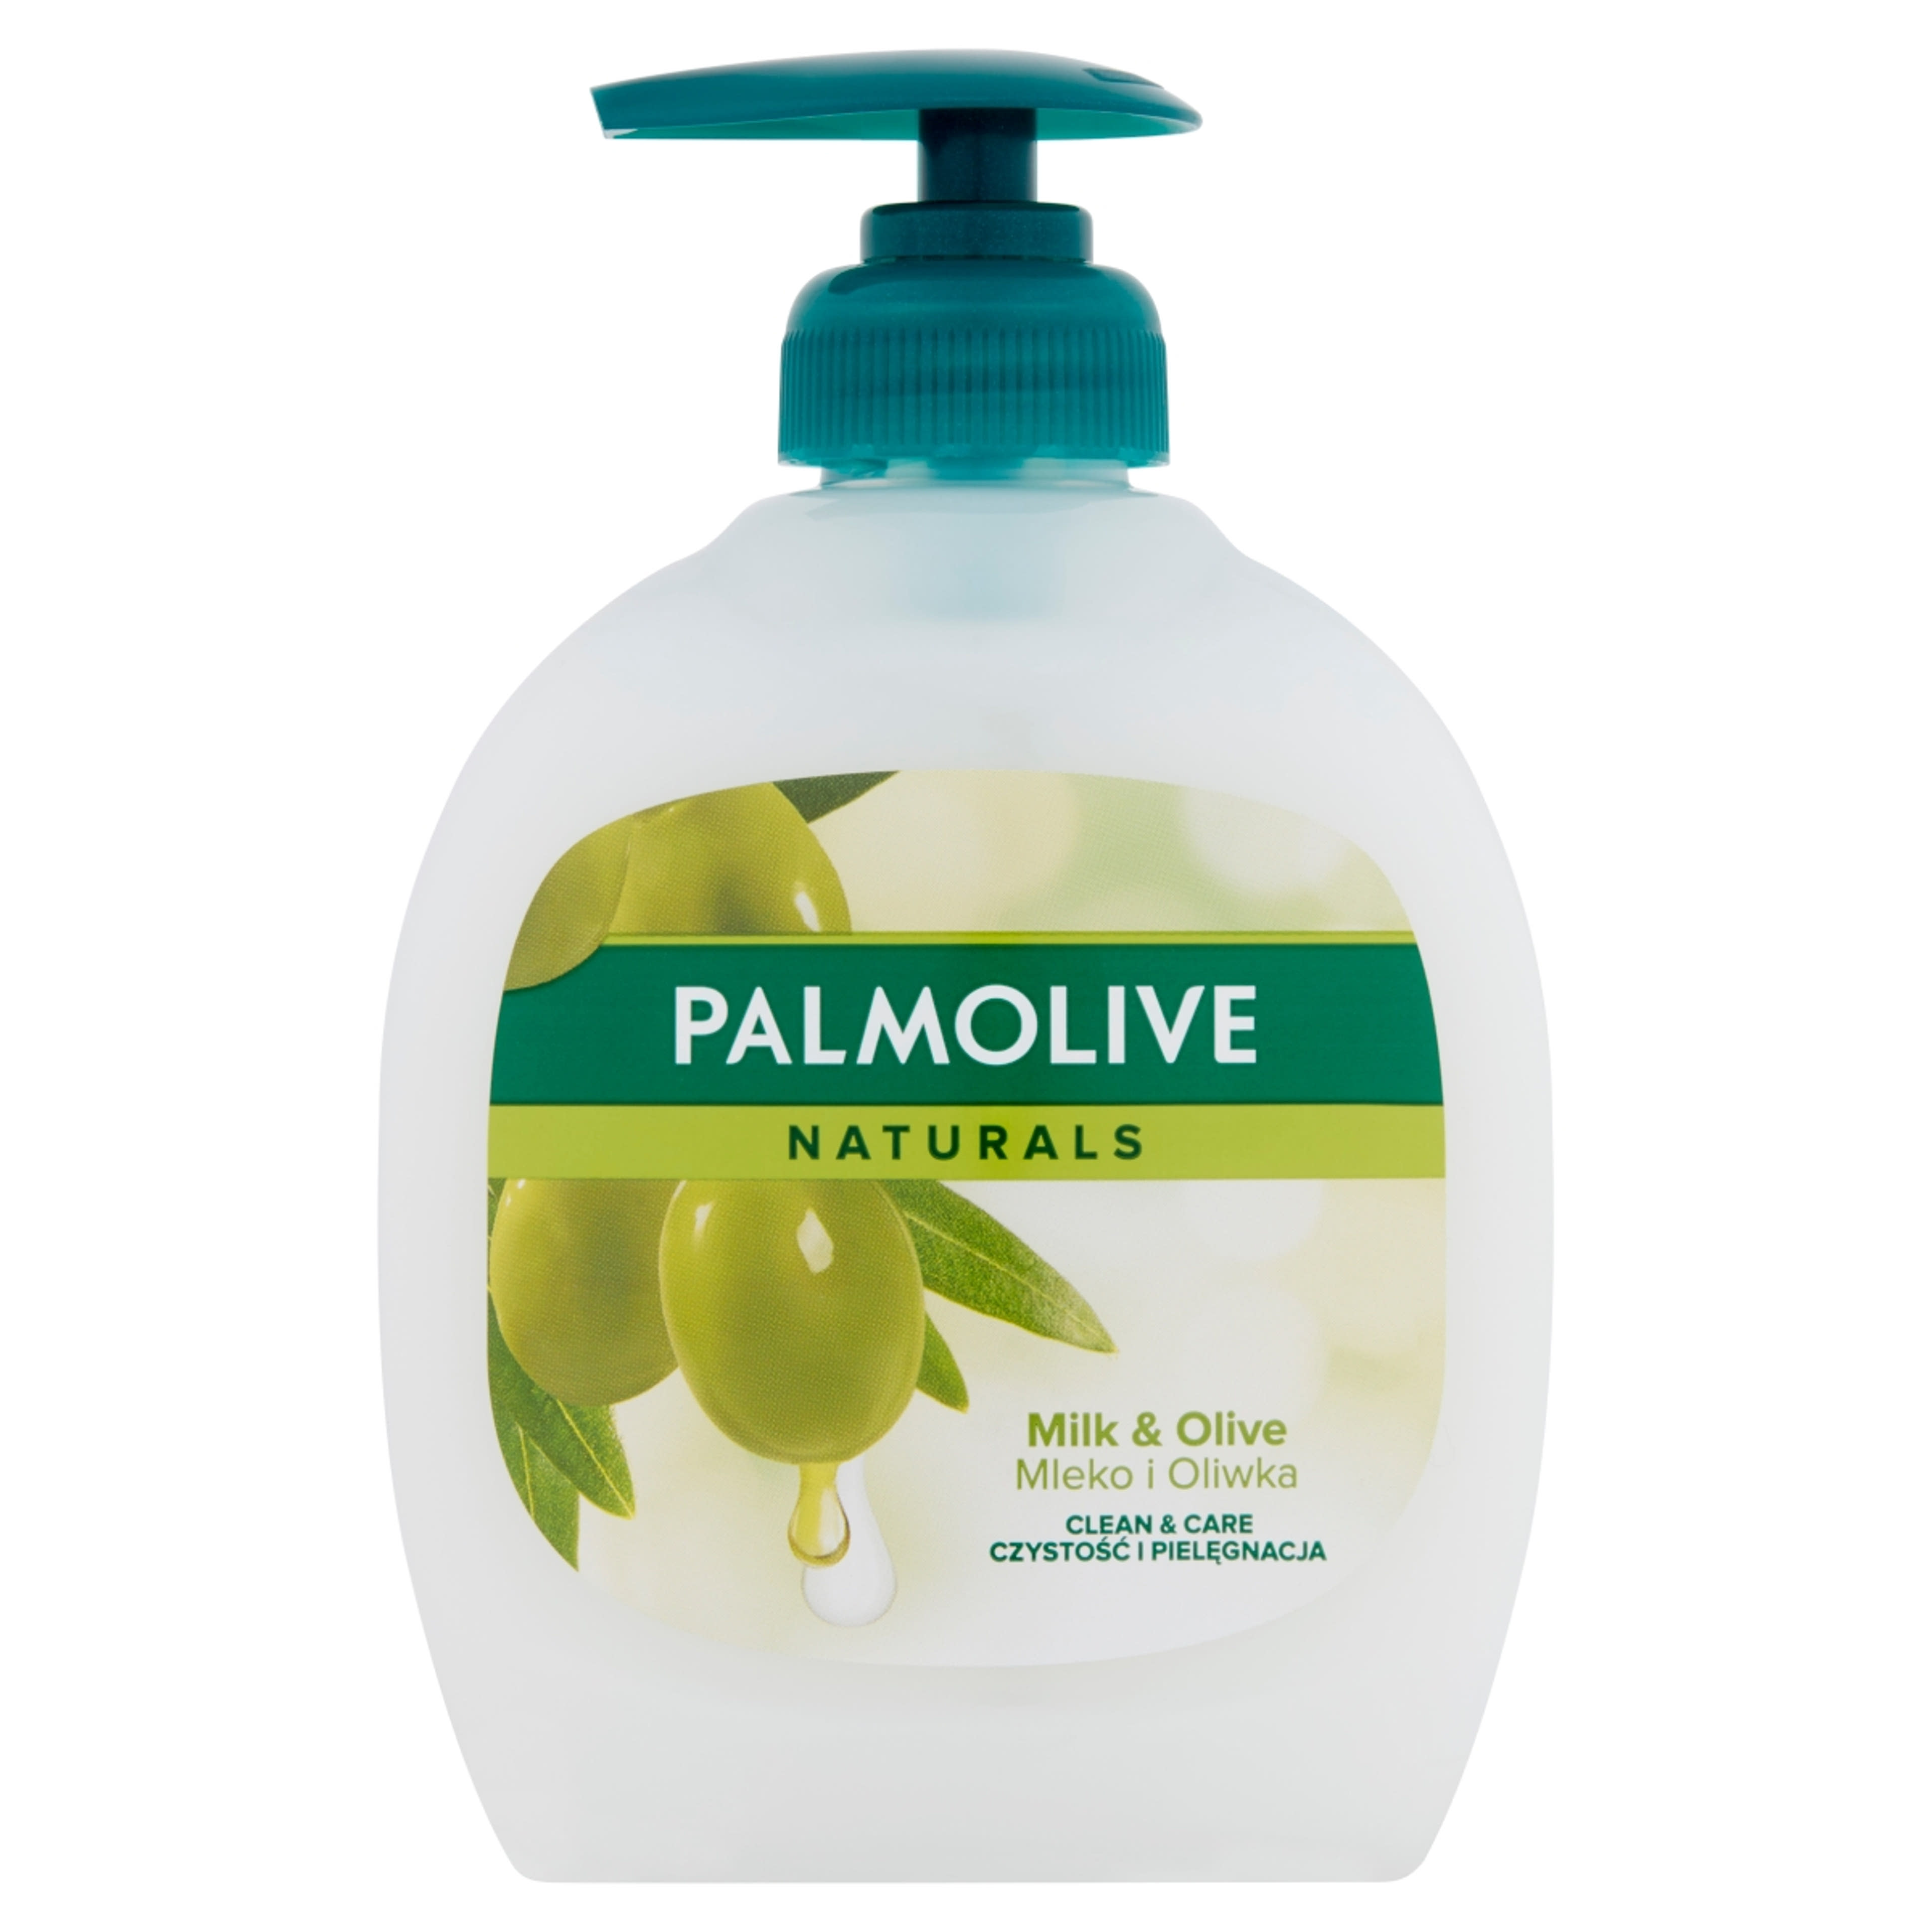 Palmolive Naturals Milk & Olive folyékony szappan - 300 ml-1